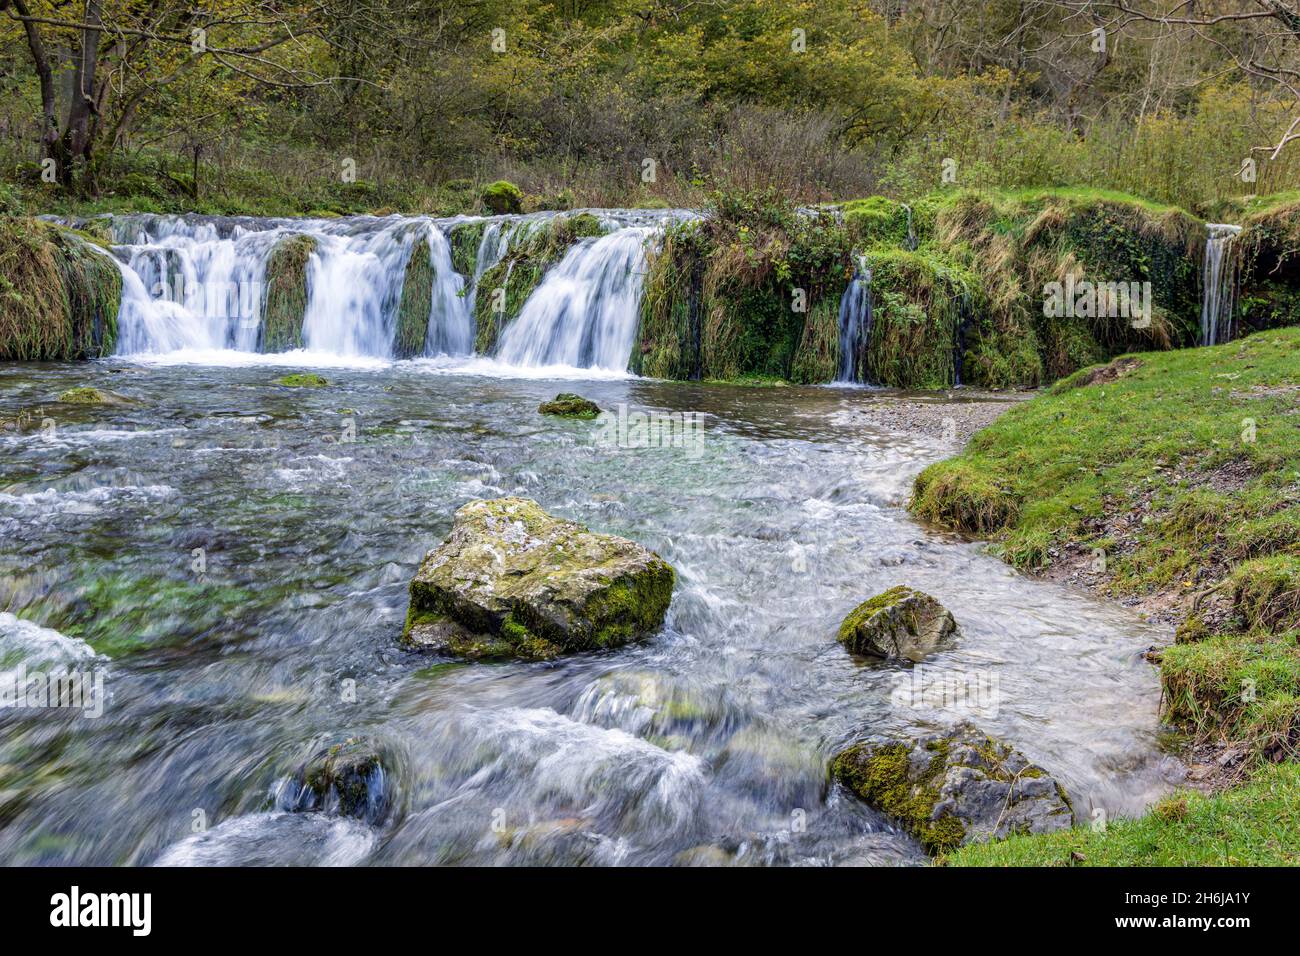 La presa de Túfa o weir es una pintoresca cascada sobre rocas de piedra caliza, el río Lathkill, el valle de Lathkill, el parque nacional del distrito de Peak, Derbyshire, Inglaterra. Foto de stock